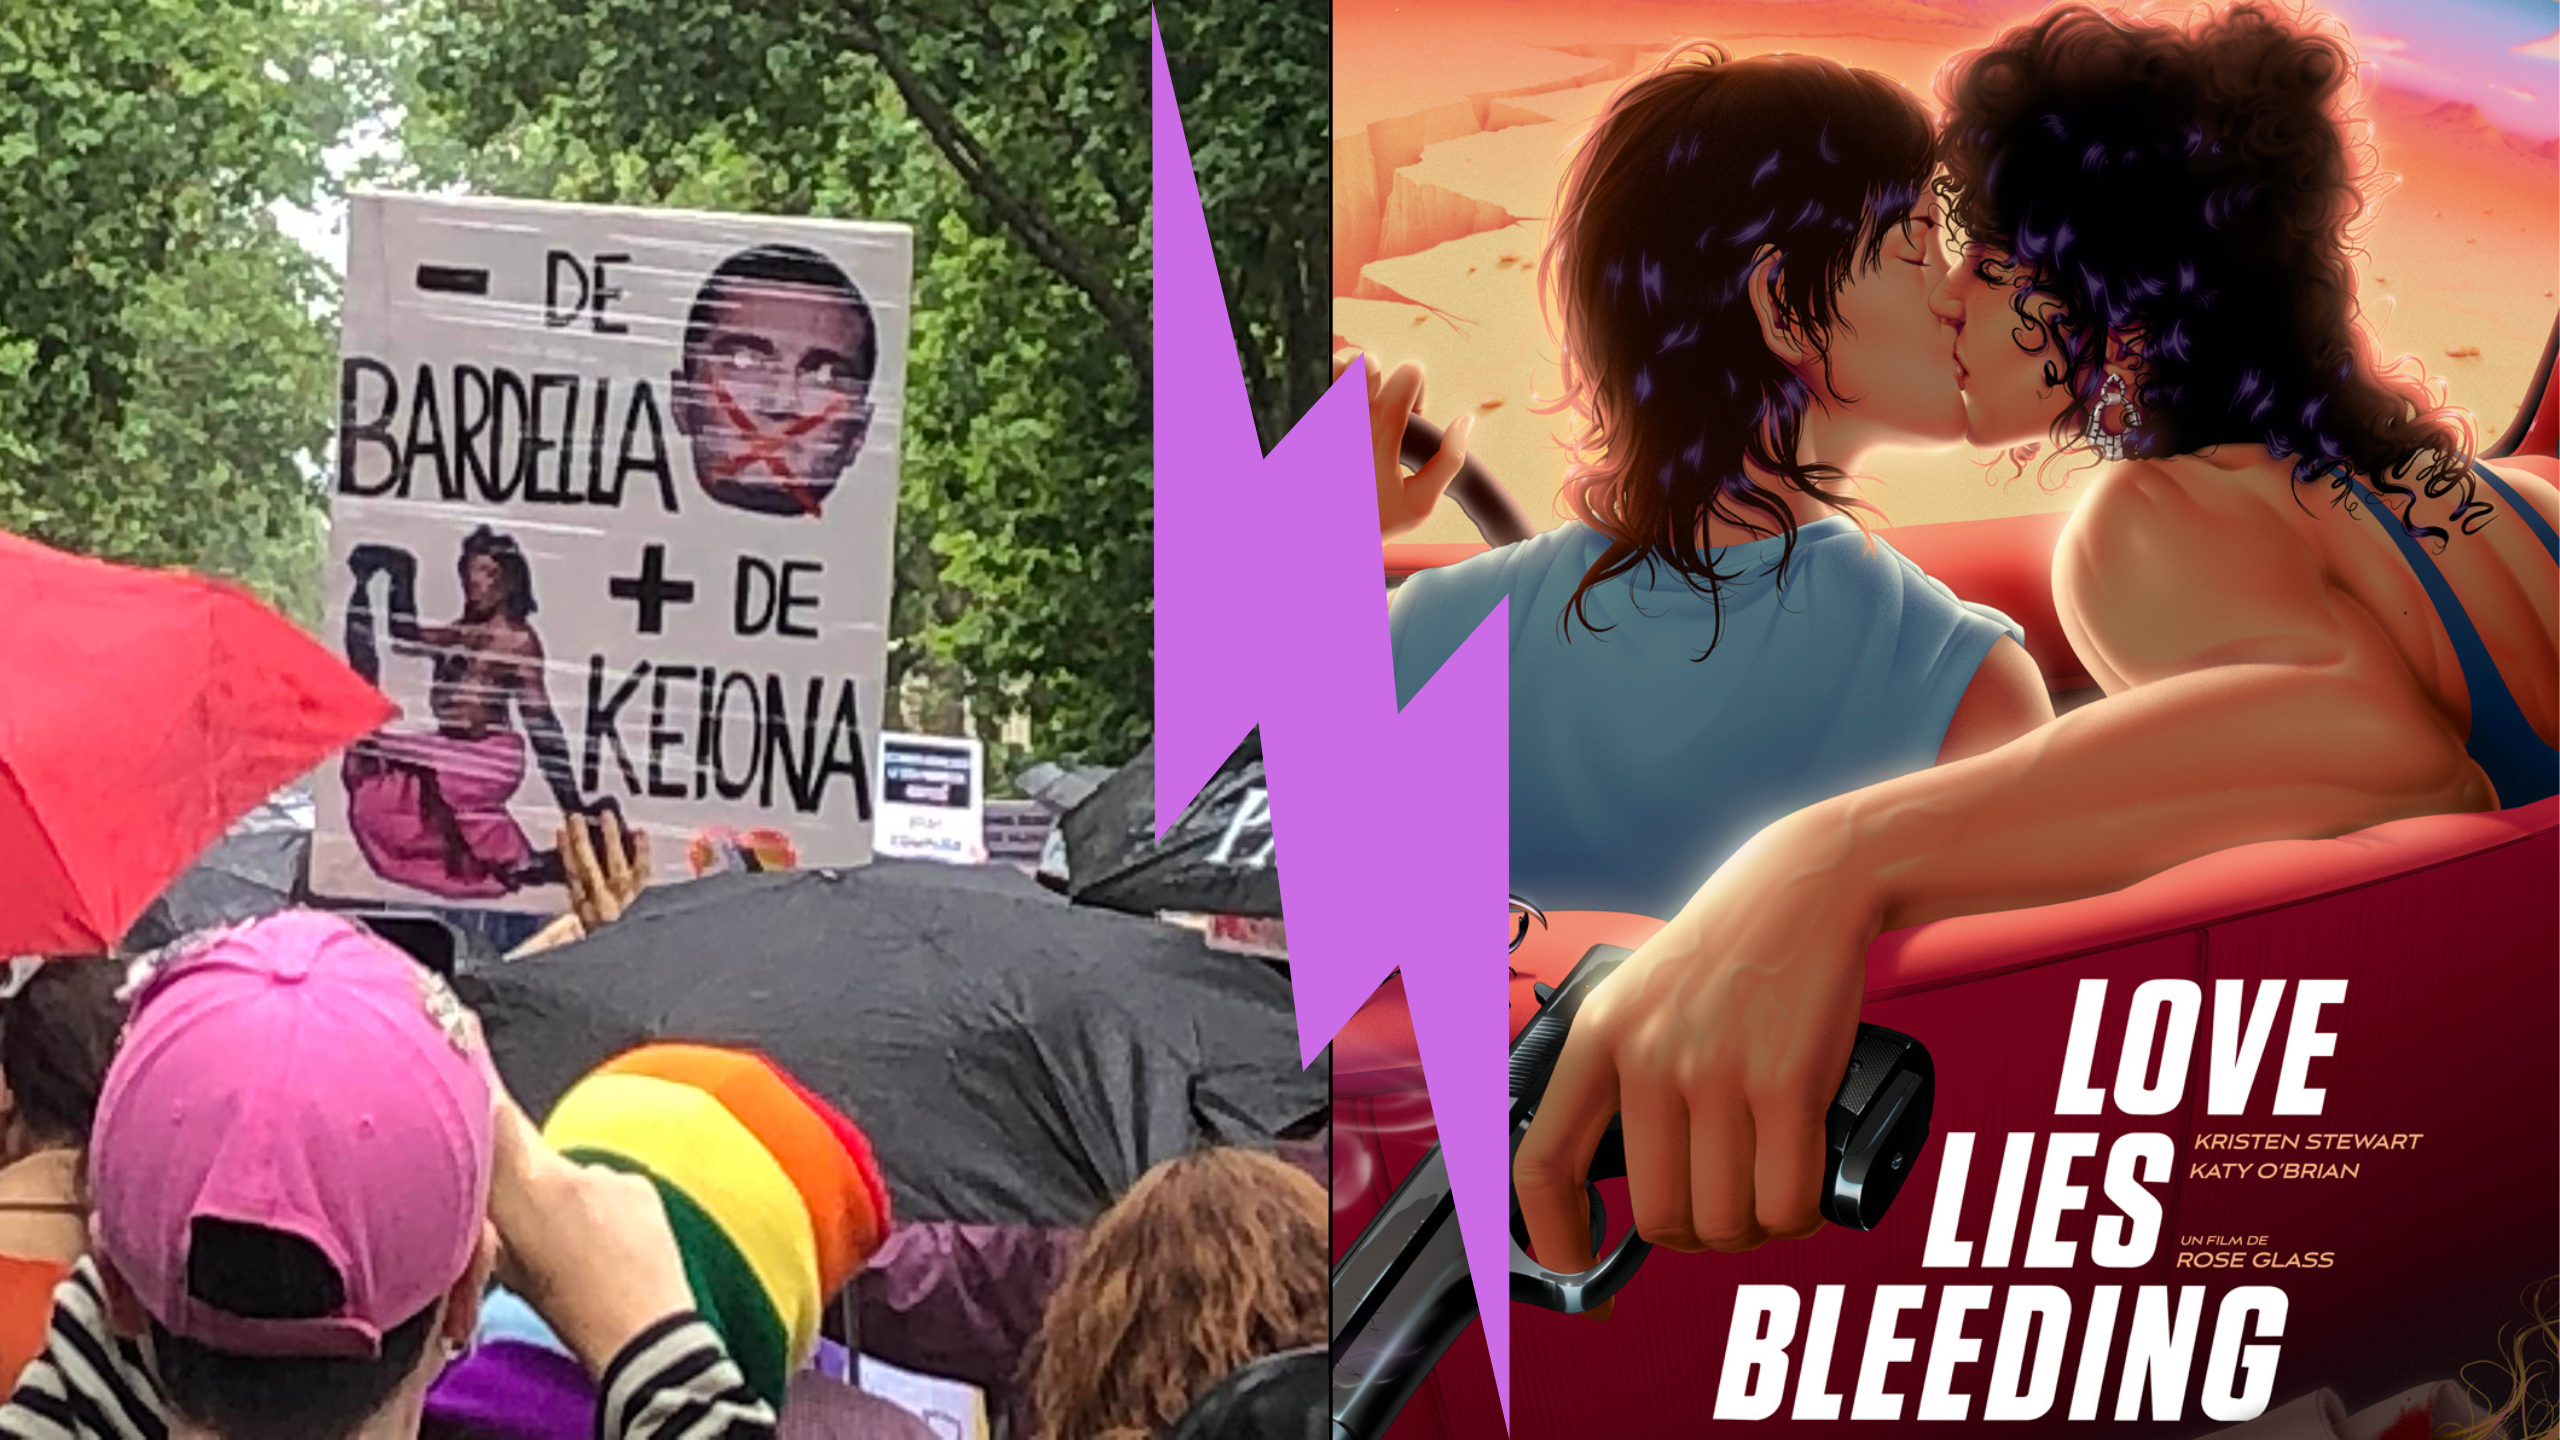 Manifestation pride radicale et affiche de love lies bleeding